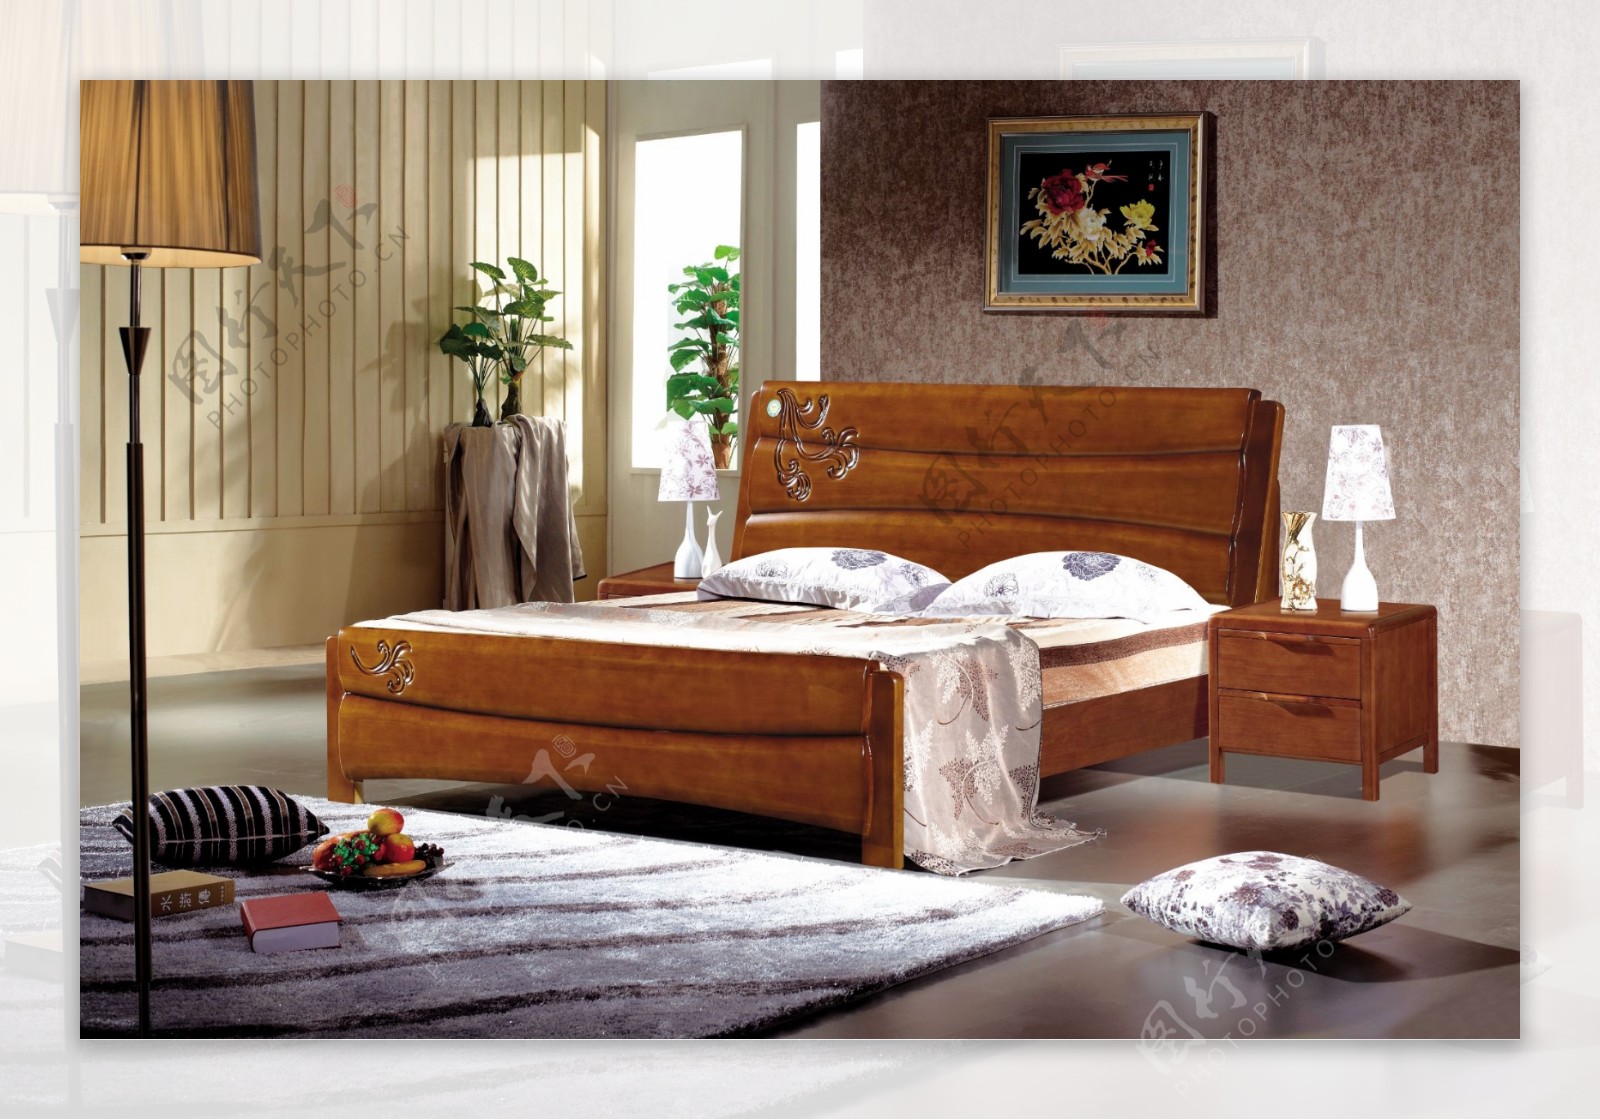 家具实木床背景实图片